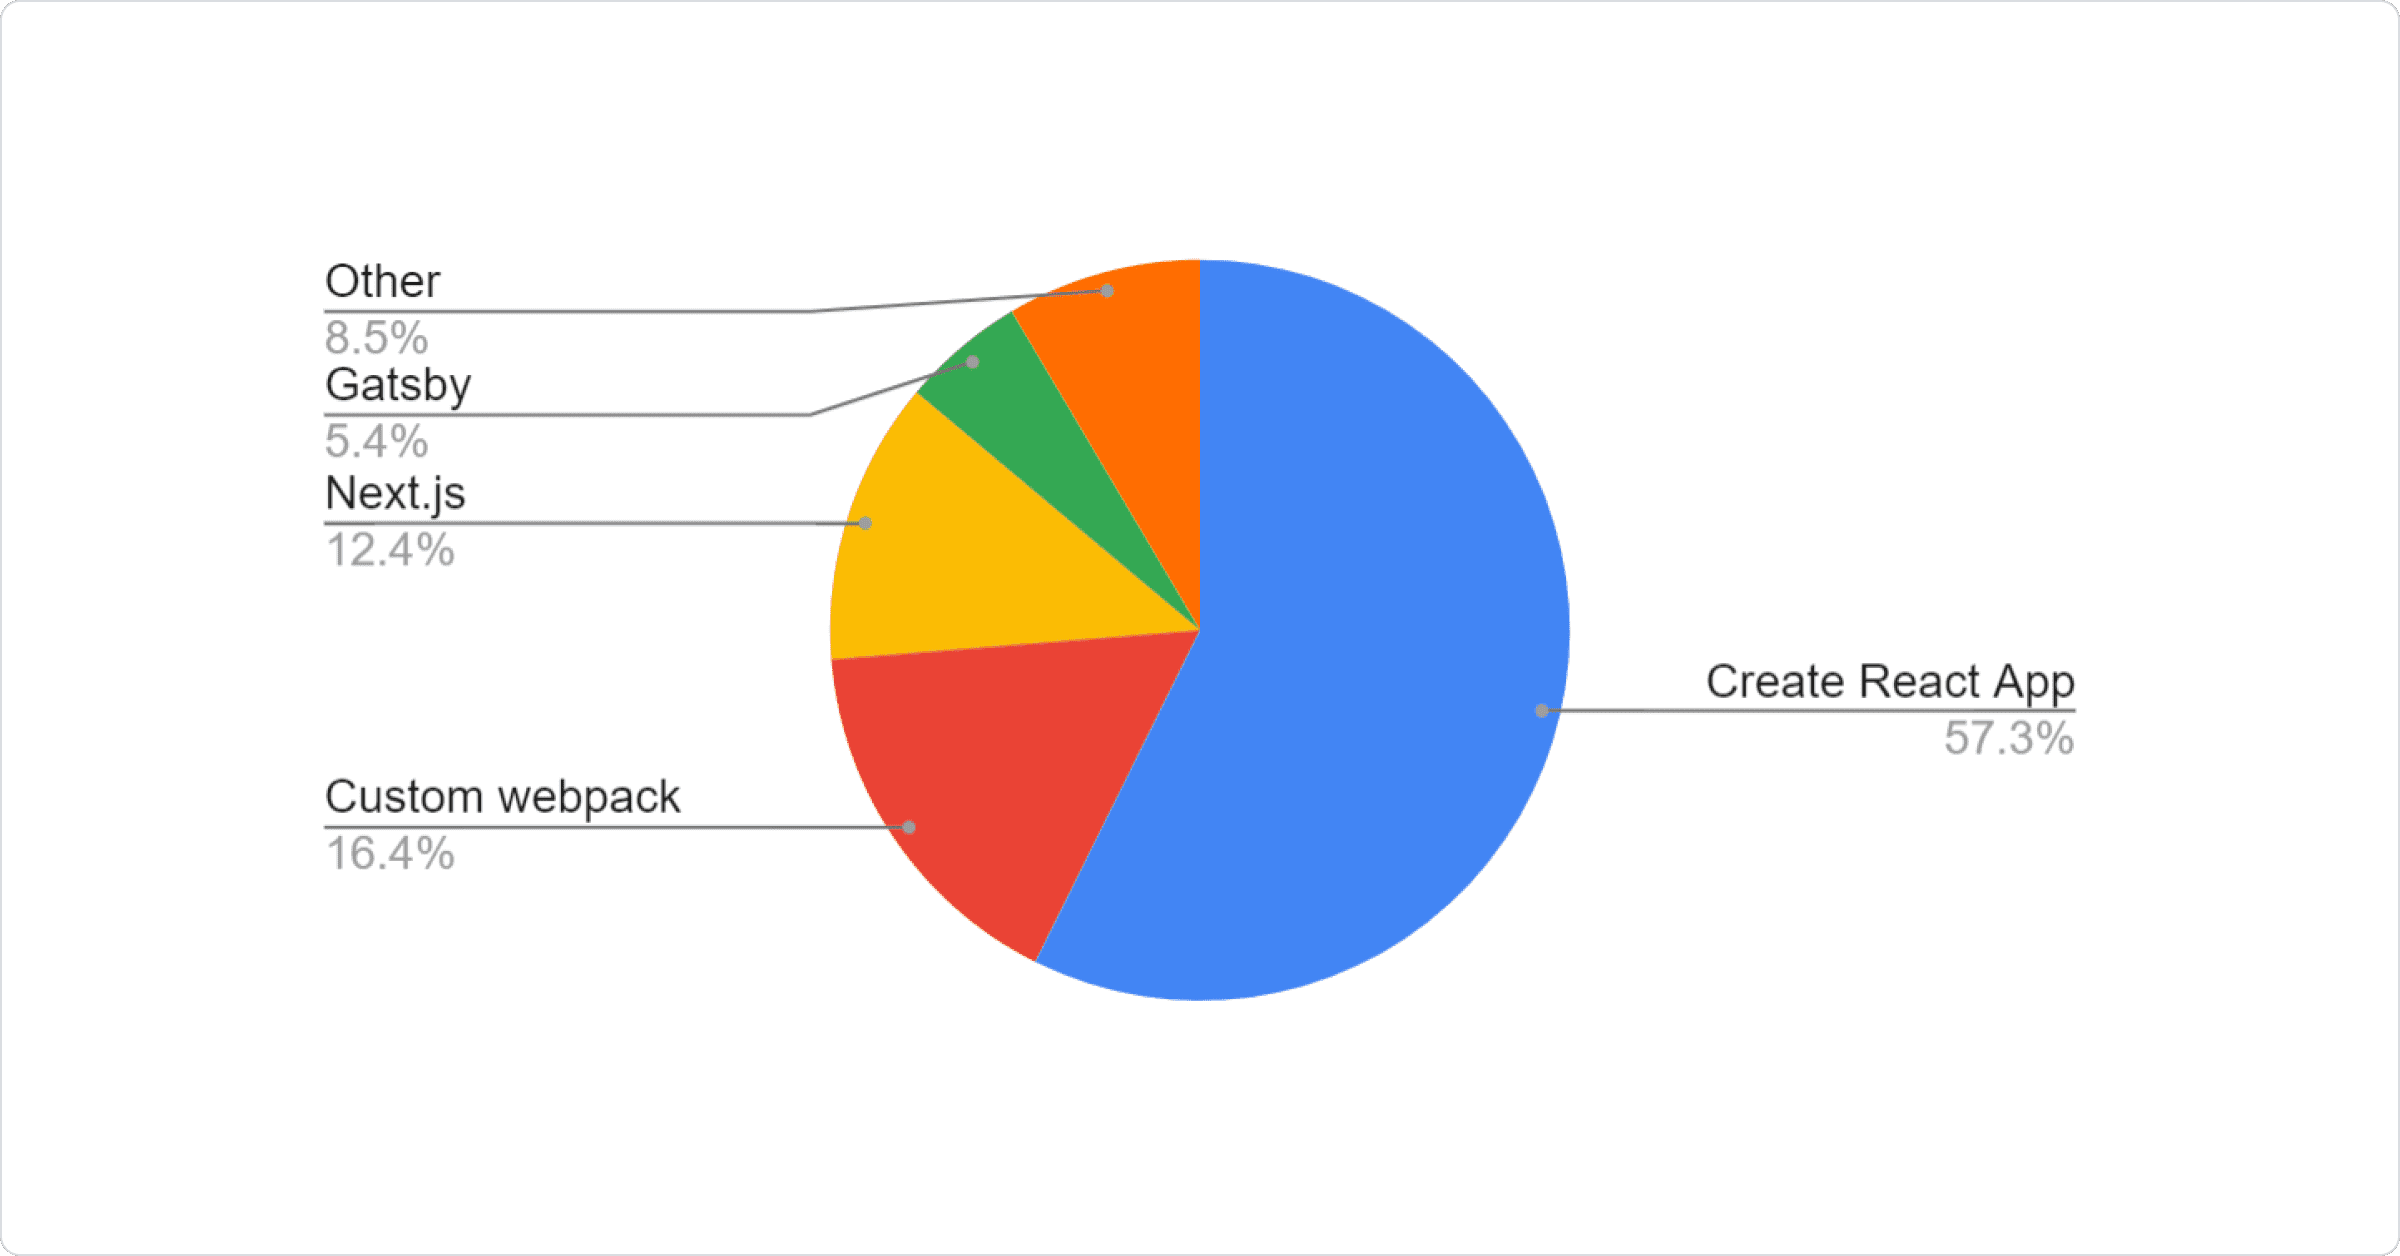 Pie chart: 57.34% Create React App, 16.40% Custom webpack, 12.35% Next.js, 5.40% Gatsby, 8.51% Other.